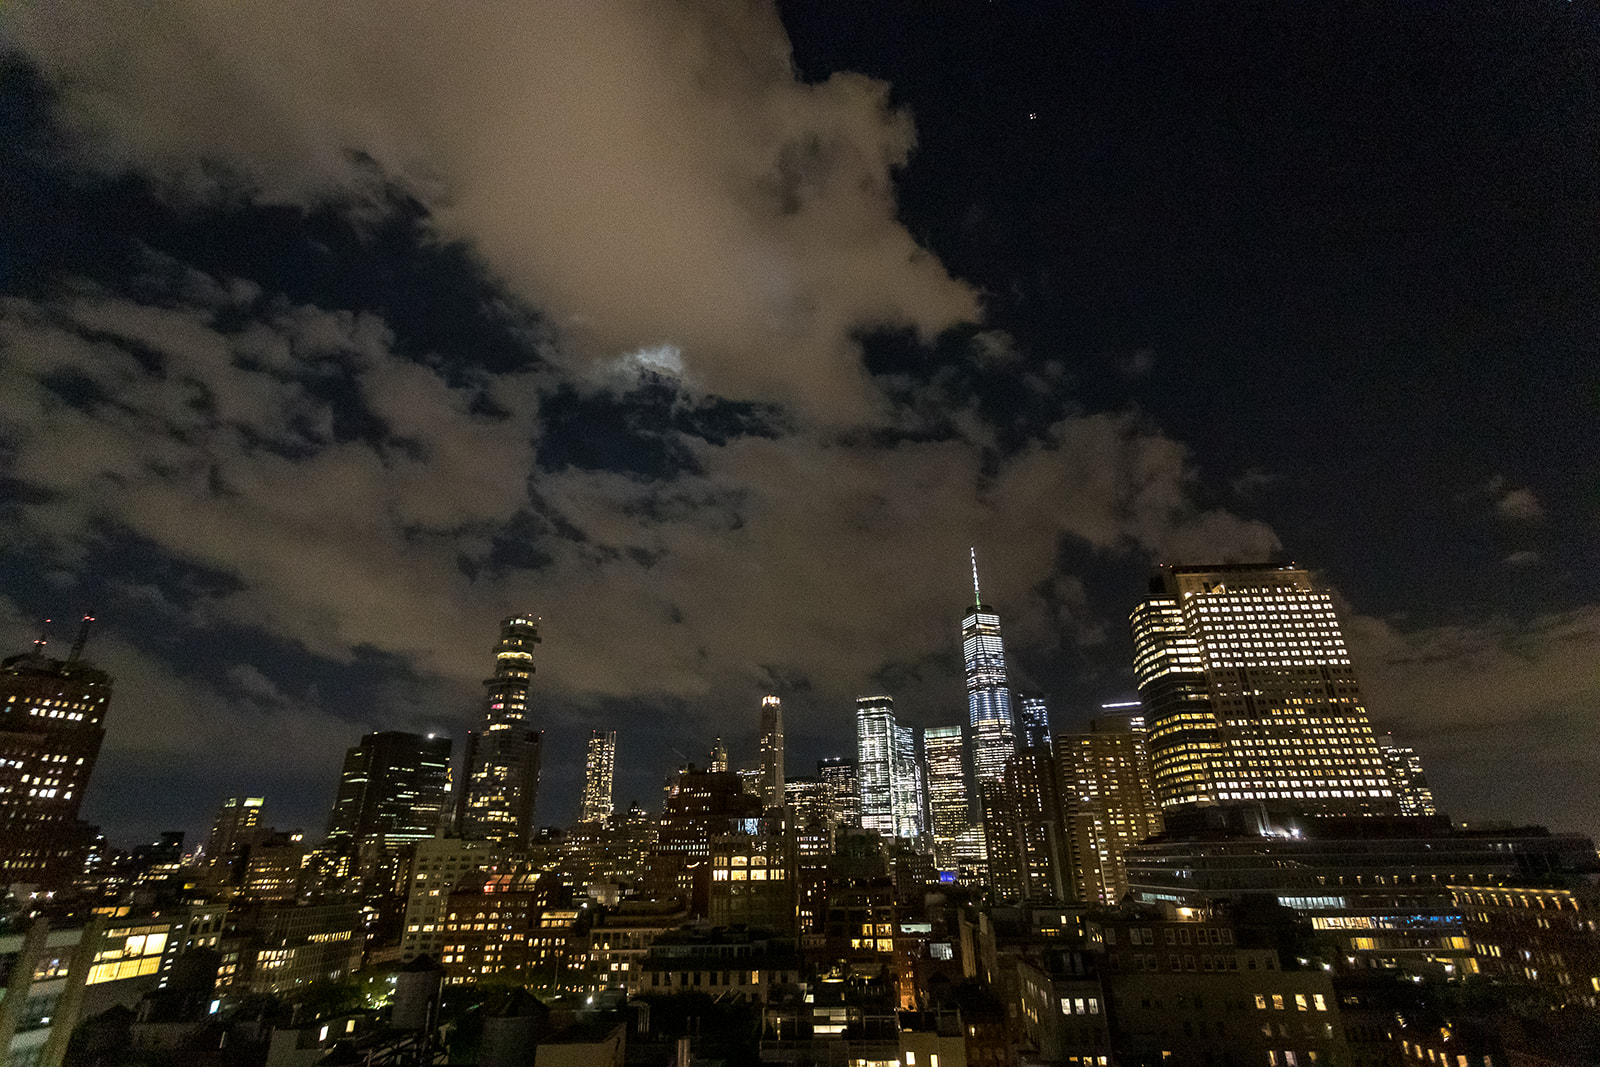 Tribeca Rooftop + 360°